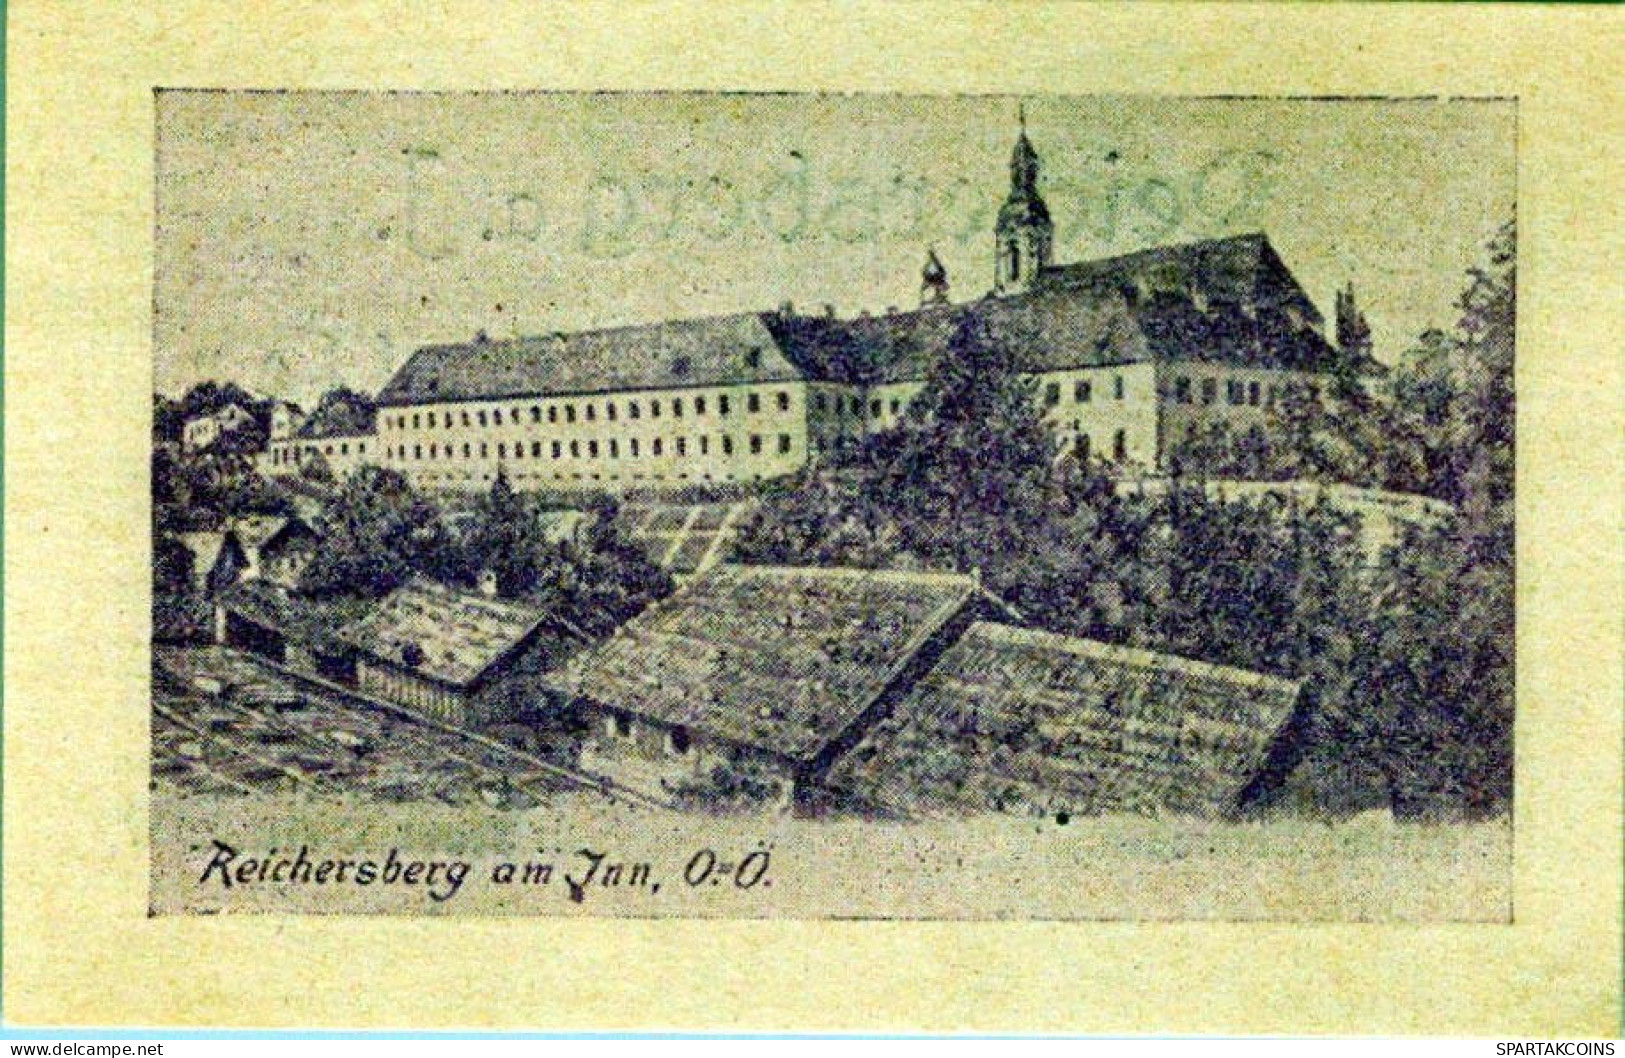 50 HELLER 1920 Stadt REICHERSBERG Oberösterreich Österreich Notgeld #PD953 - Lokale Ausgaben